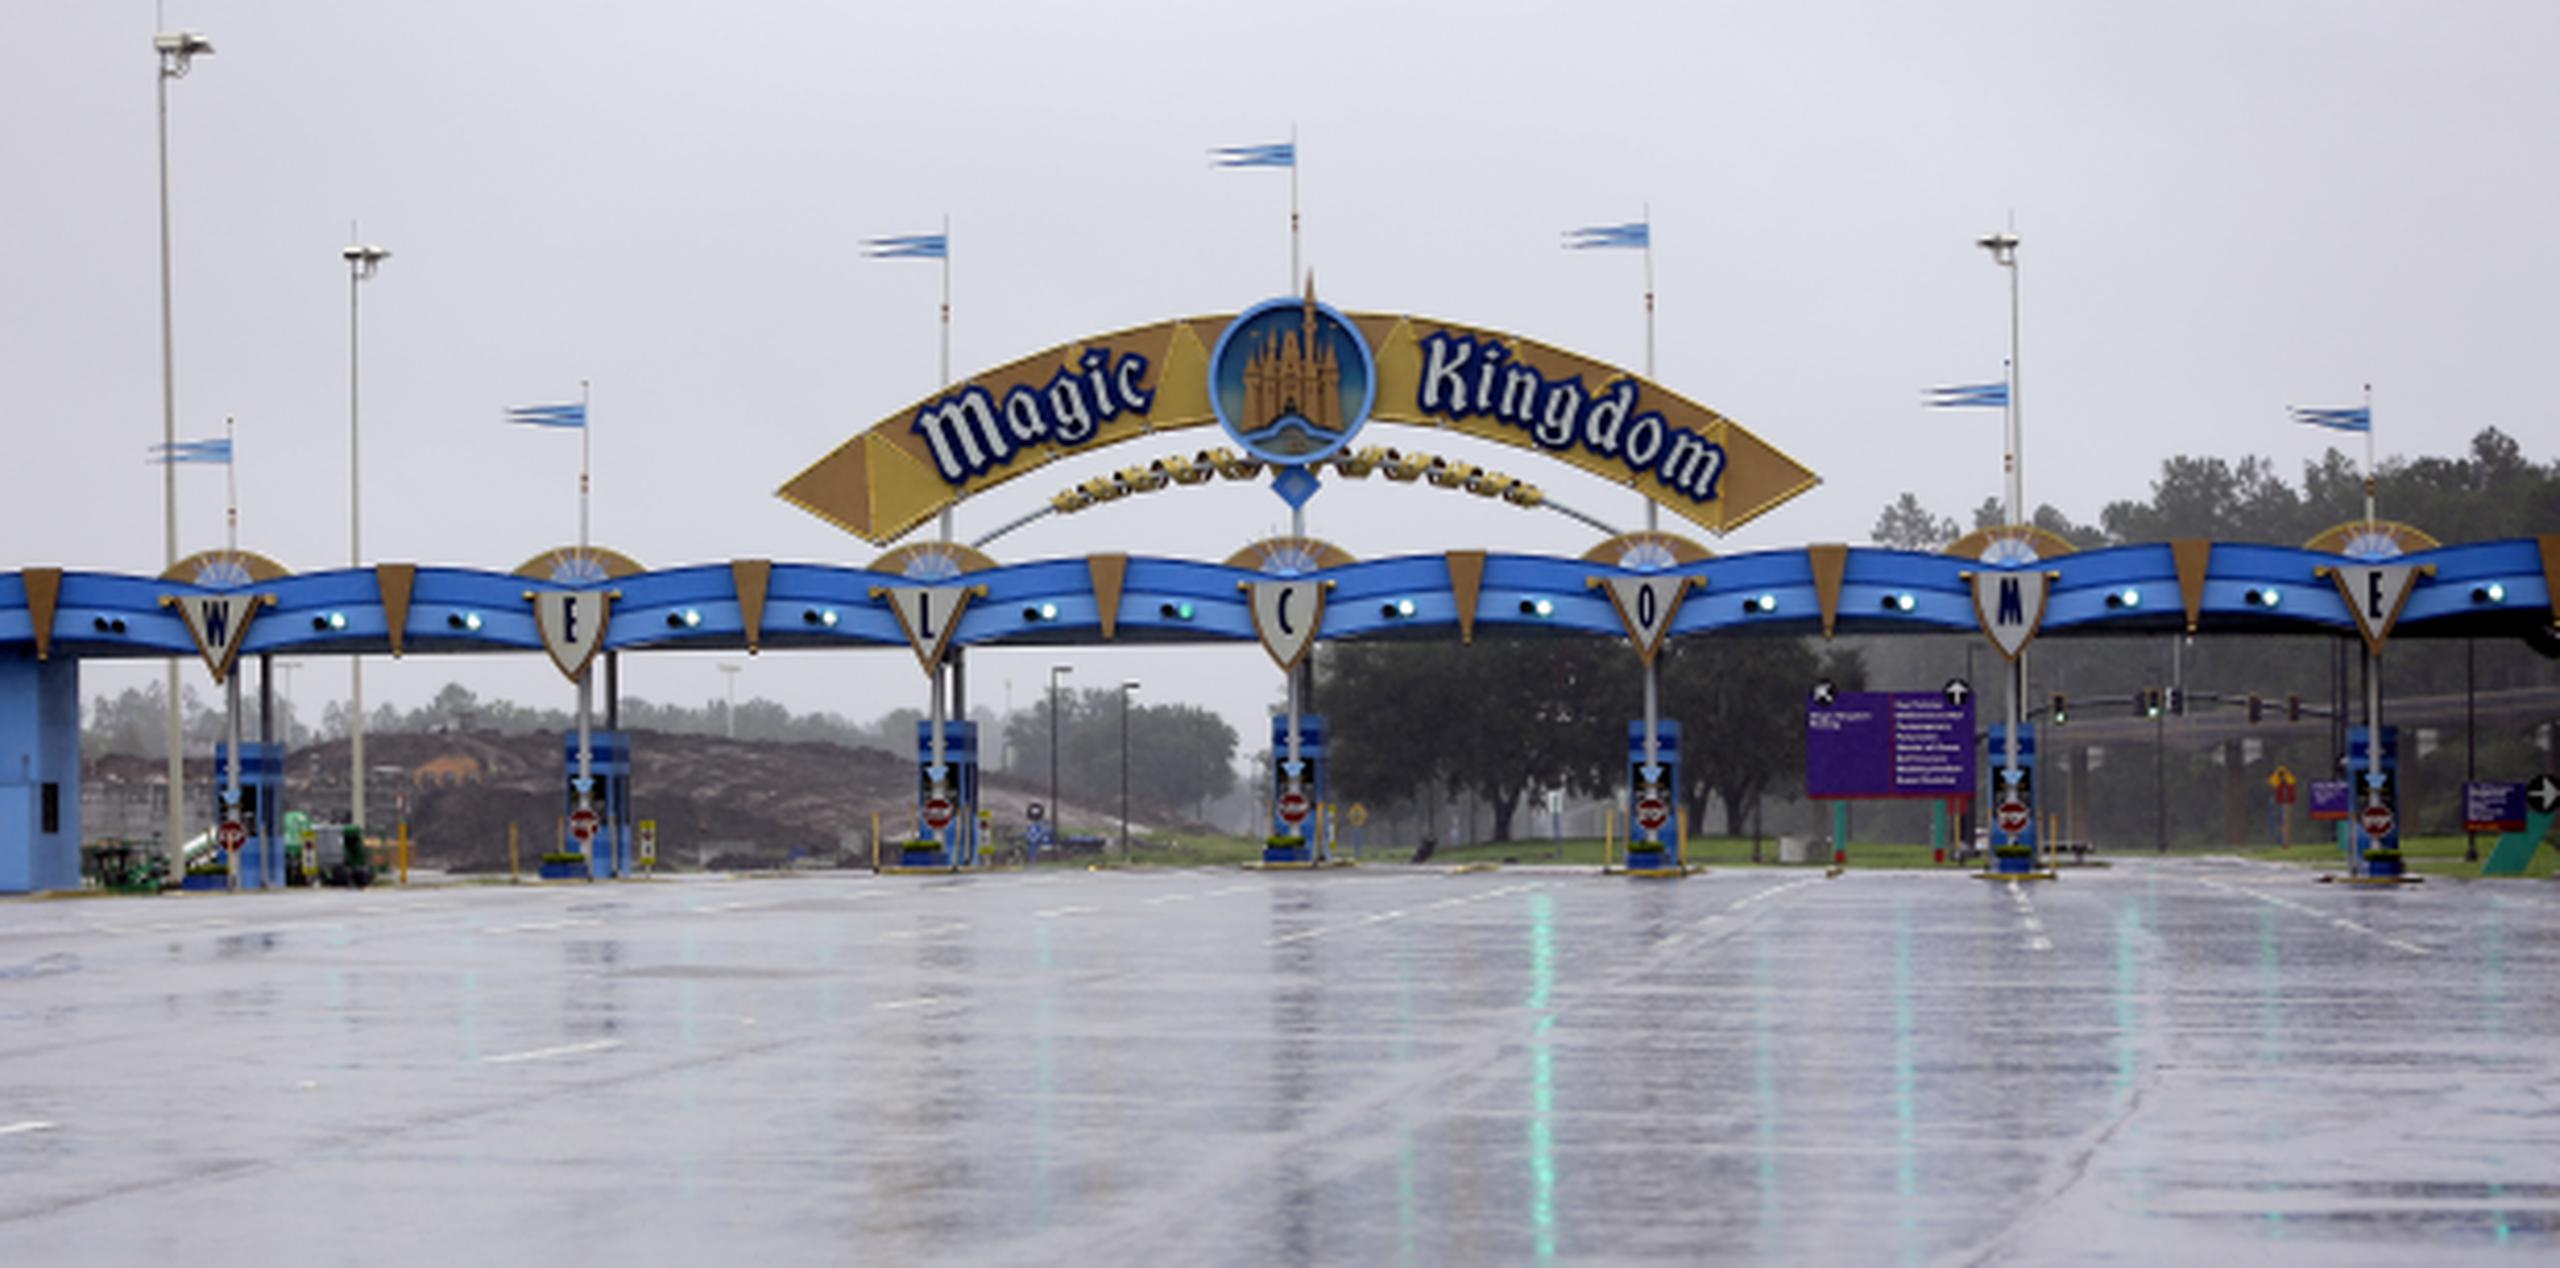 Así lucía la entrada de Magic Kingdom el pasado domingo tras el cierre del parque por el paso del huracán Irma. (AP / John Raoux)